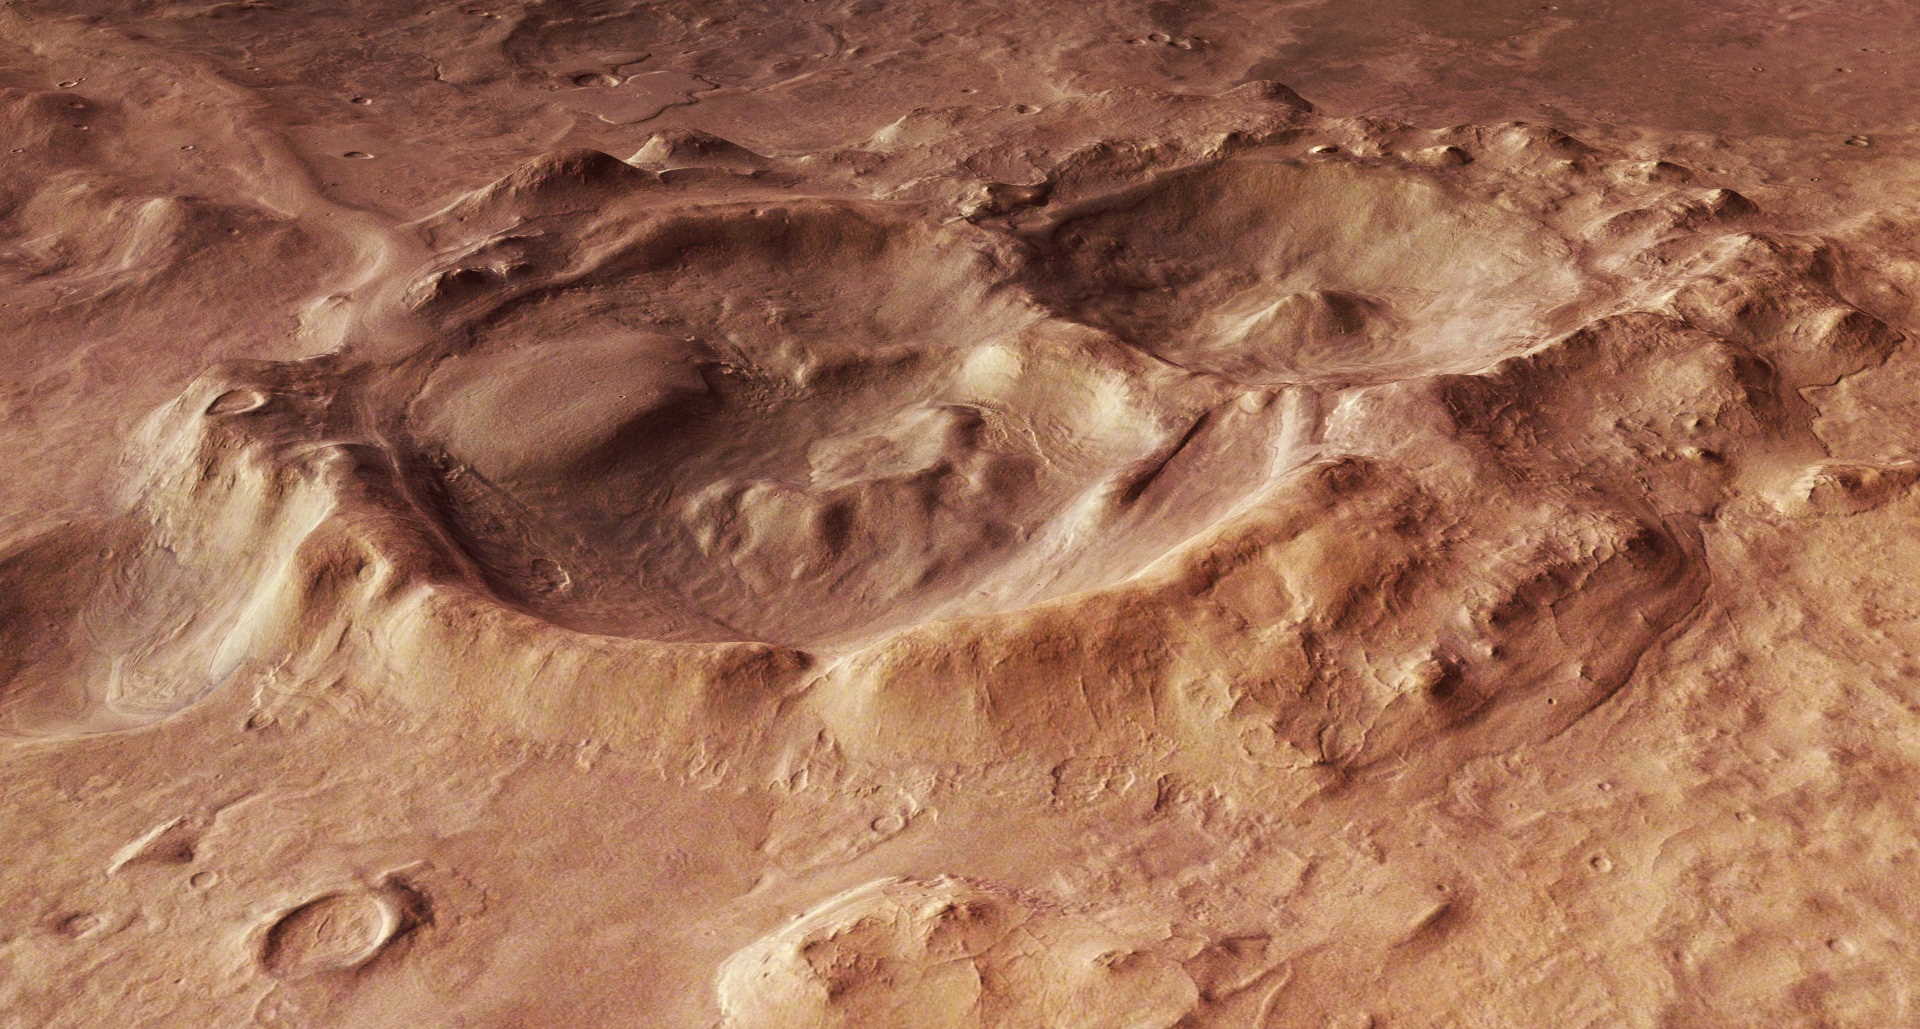 Моделювання кратерів рівнини Еллада, яка могла утворитися у нойський період — між 3,8 та 4,1 мільярда років тому. Саме в цей час автори роботи розглядають потенційну населеність Марса. ESA / DLR / FU Berlin